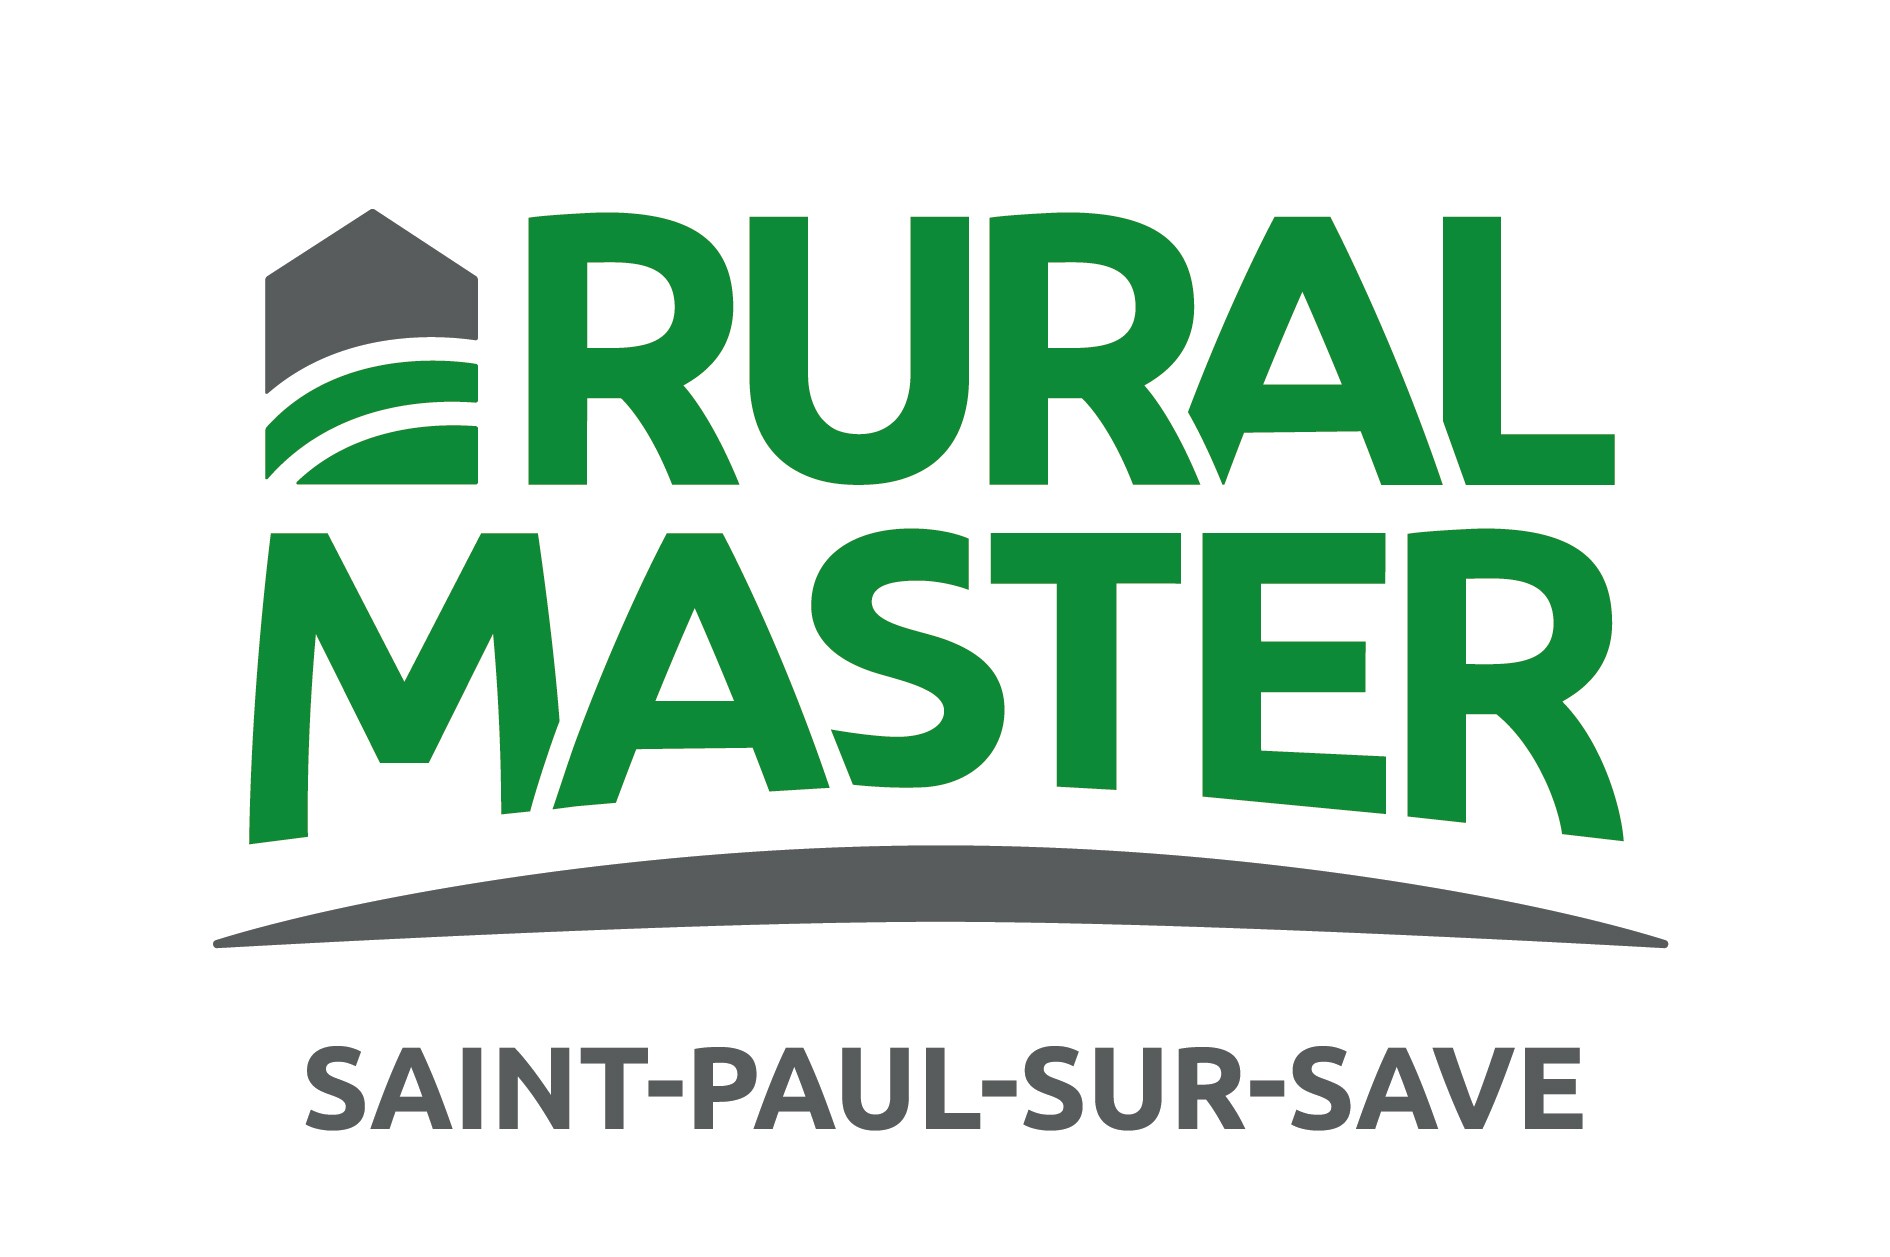 Rural Master Saint-Paul-Sur-Save